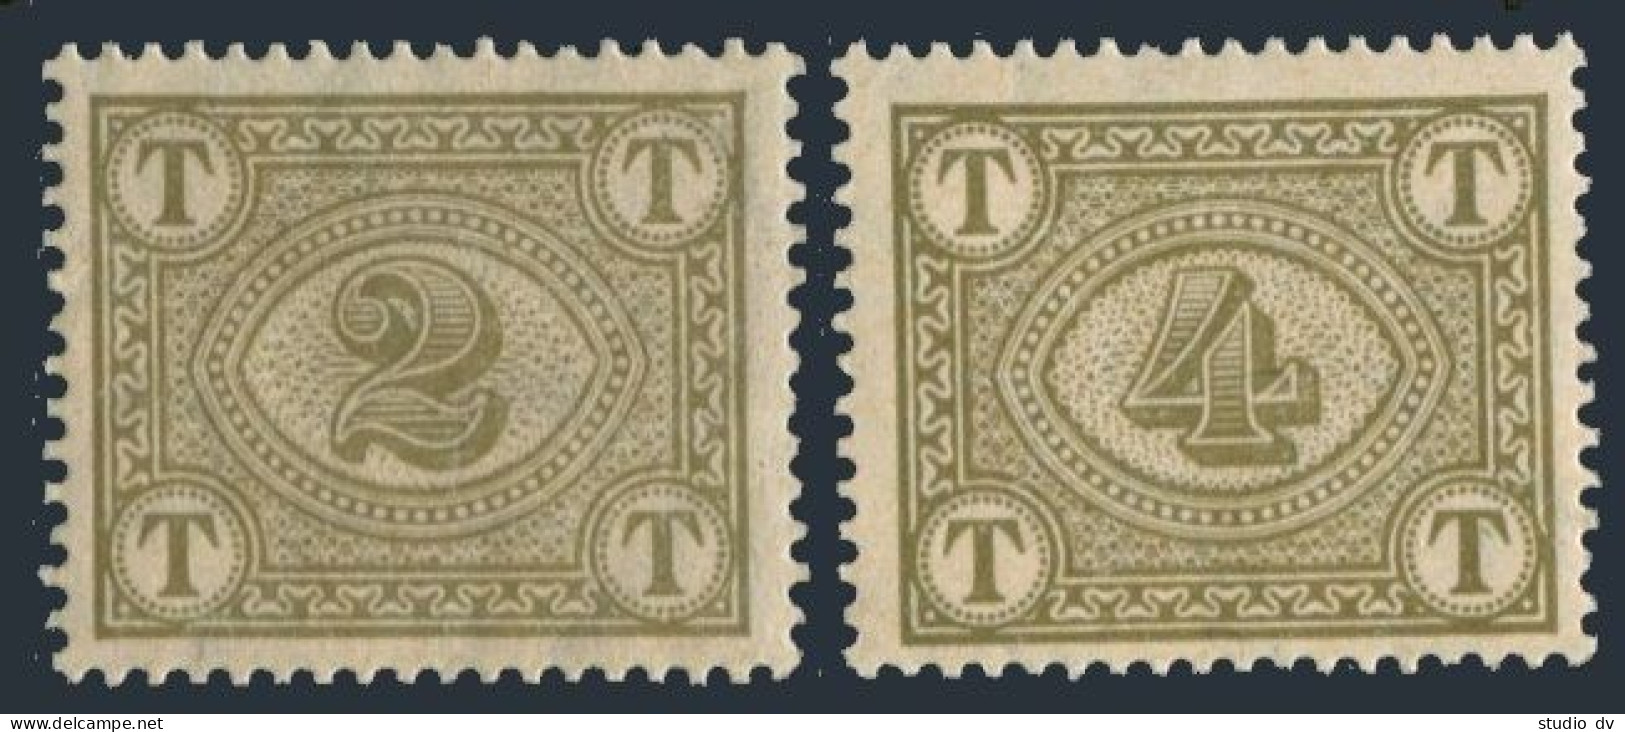 Dominican Republic J9-J10,MNH.Michel P9-P10. Postage Due Stamps,1913.Numeral. - Dominicaine (République)